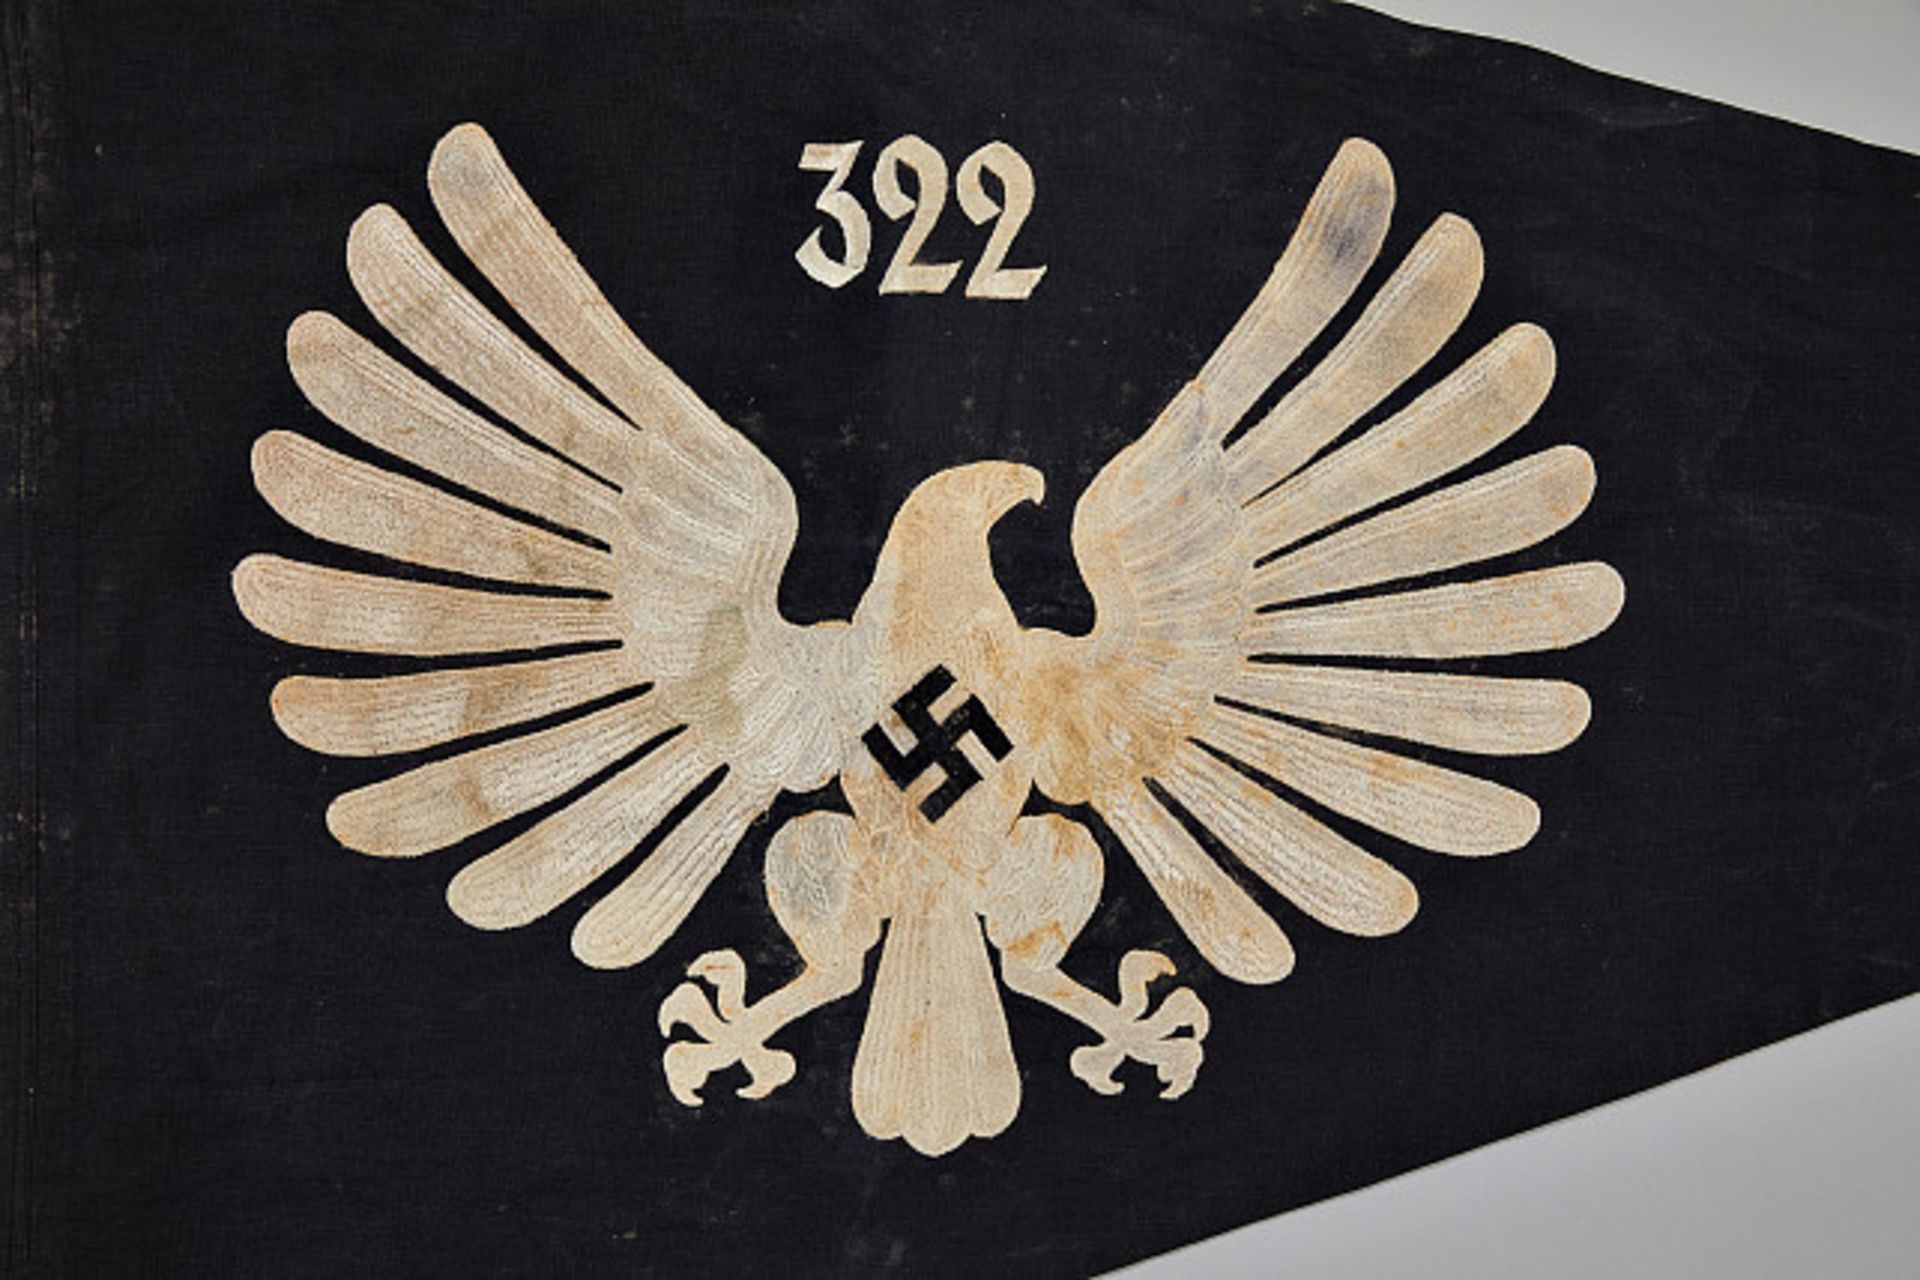 Deutsches Reich 1933 - 1945 - HJ - Hitlerjugend Sammlung Lothar Hartung - Teil I : Jungmädel-